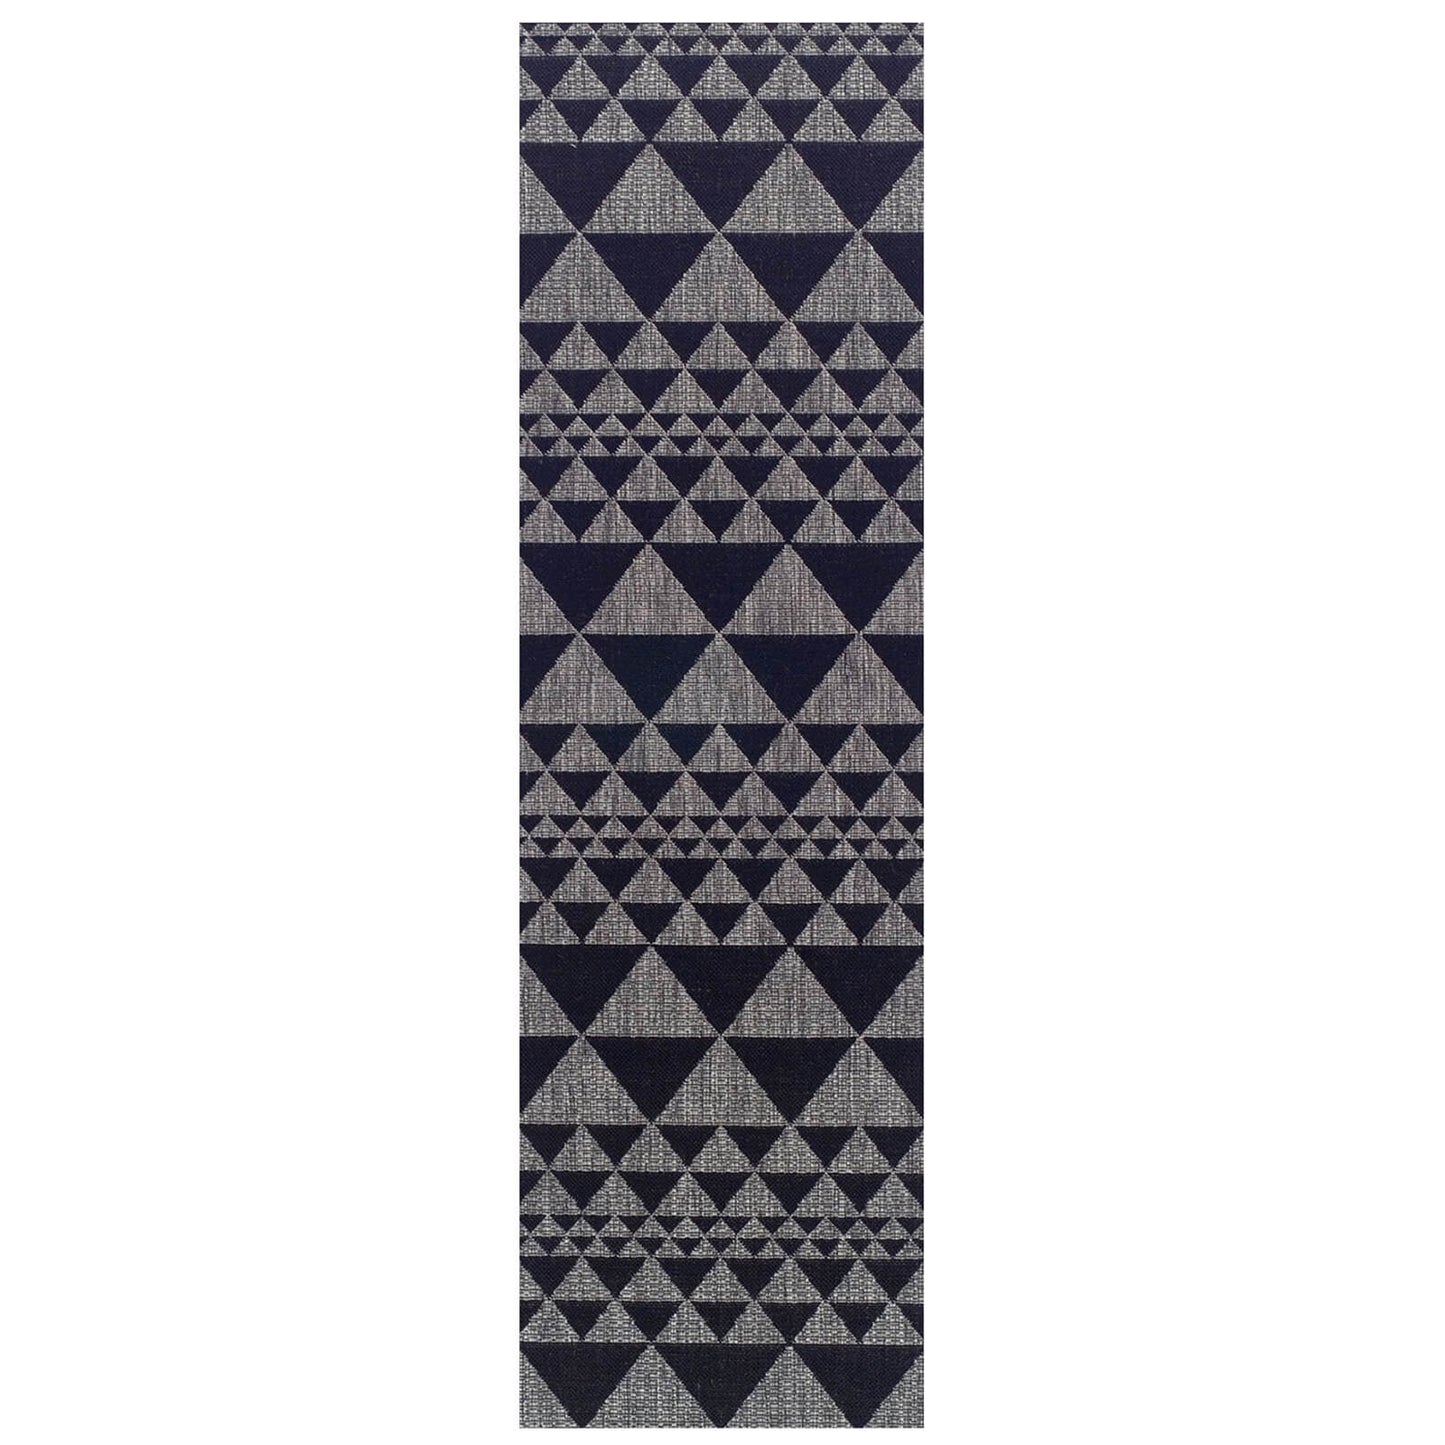 Oriental Weavers Moda Prism Black Grey Rug